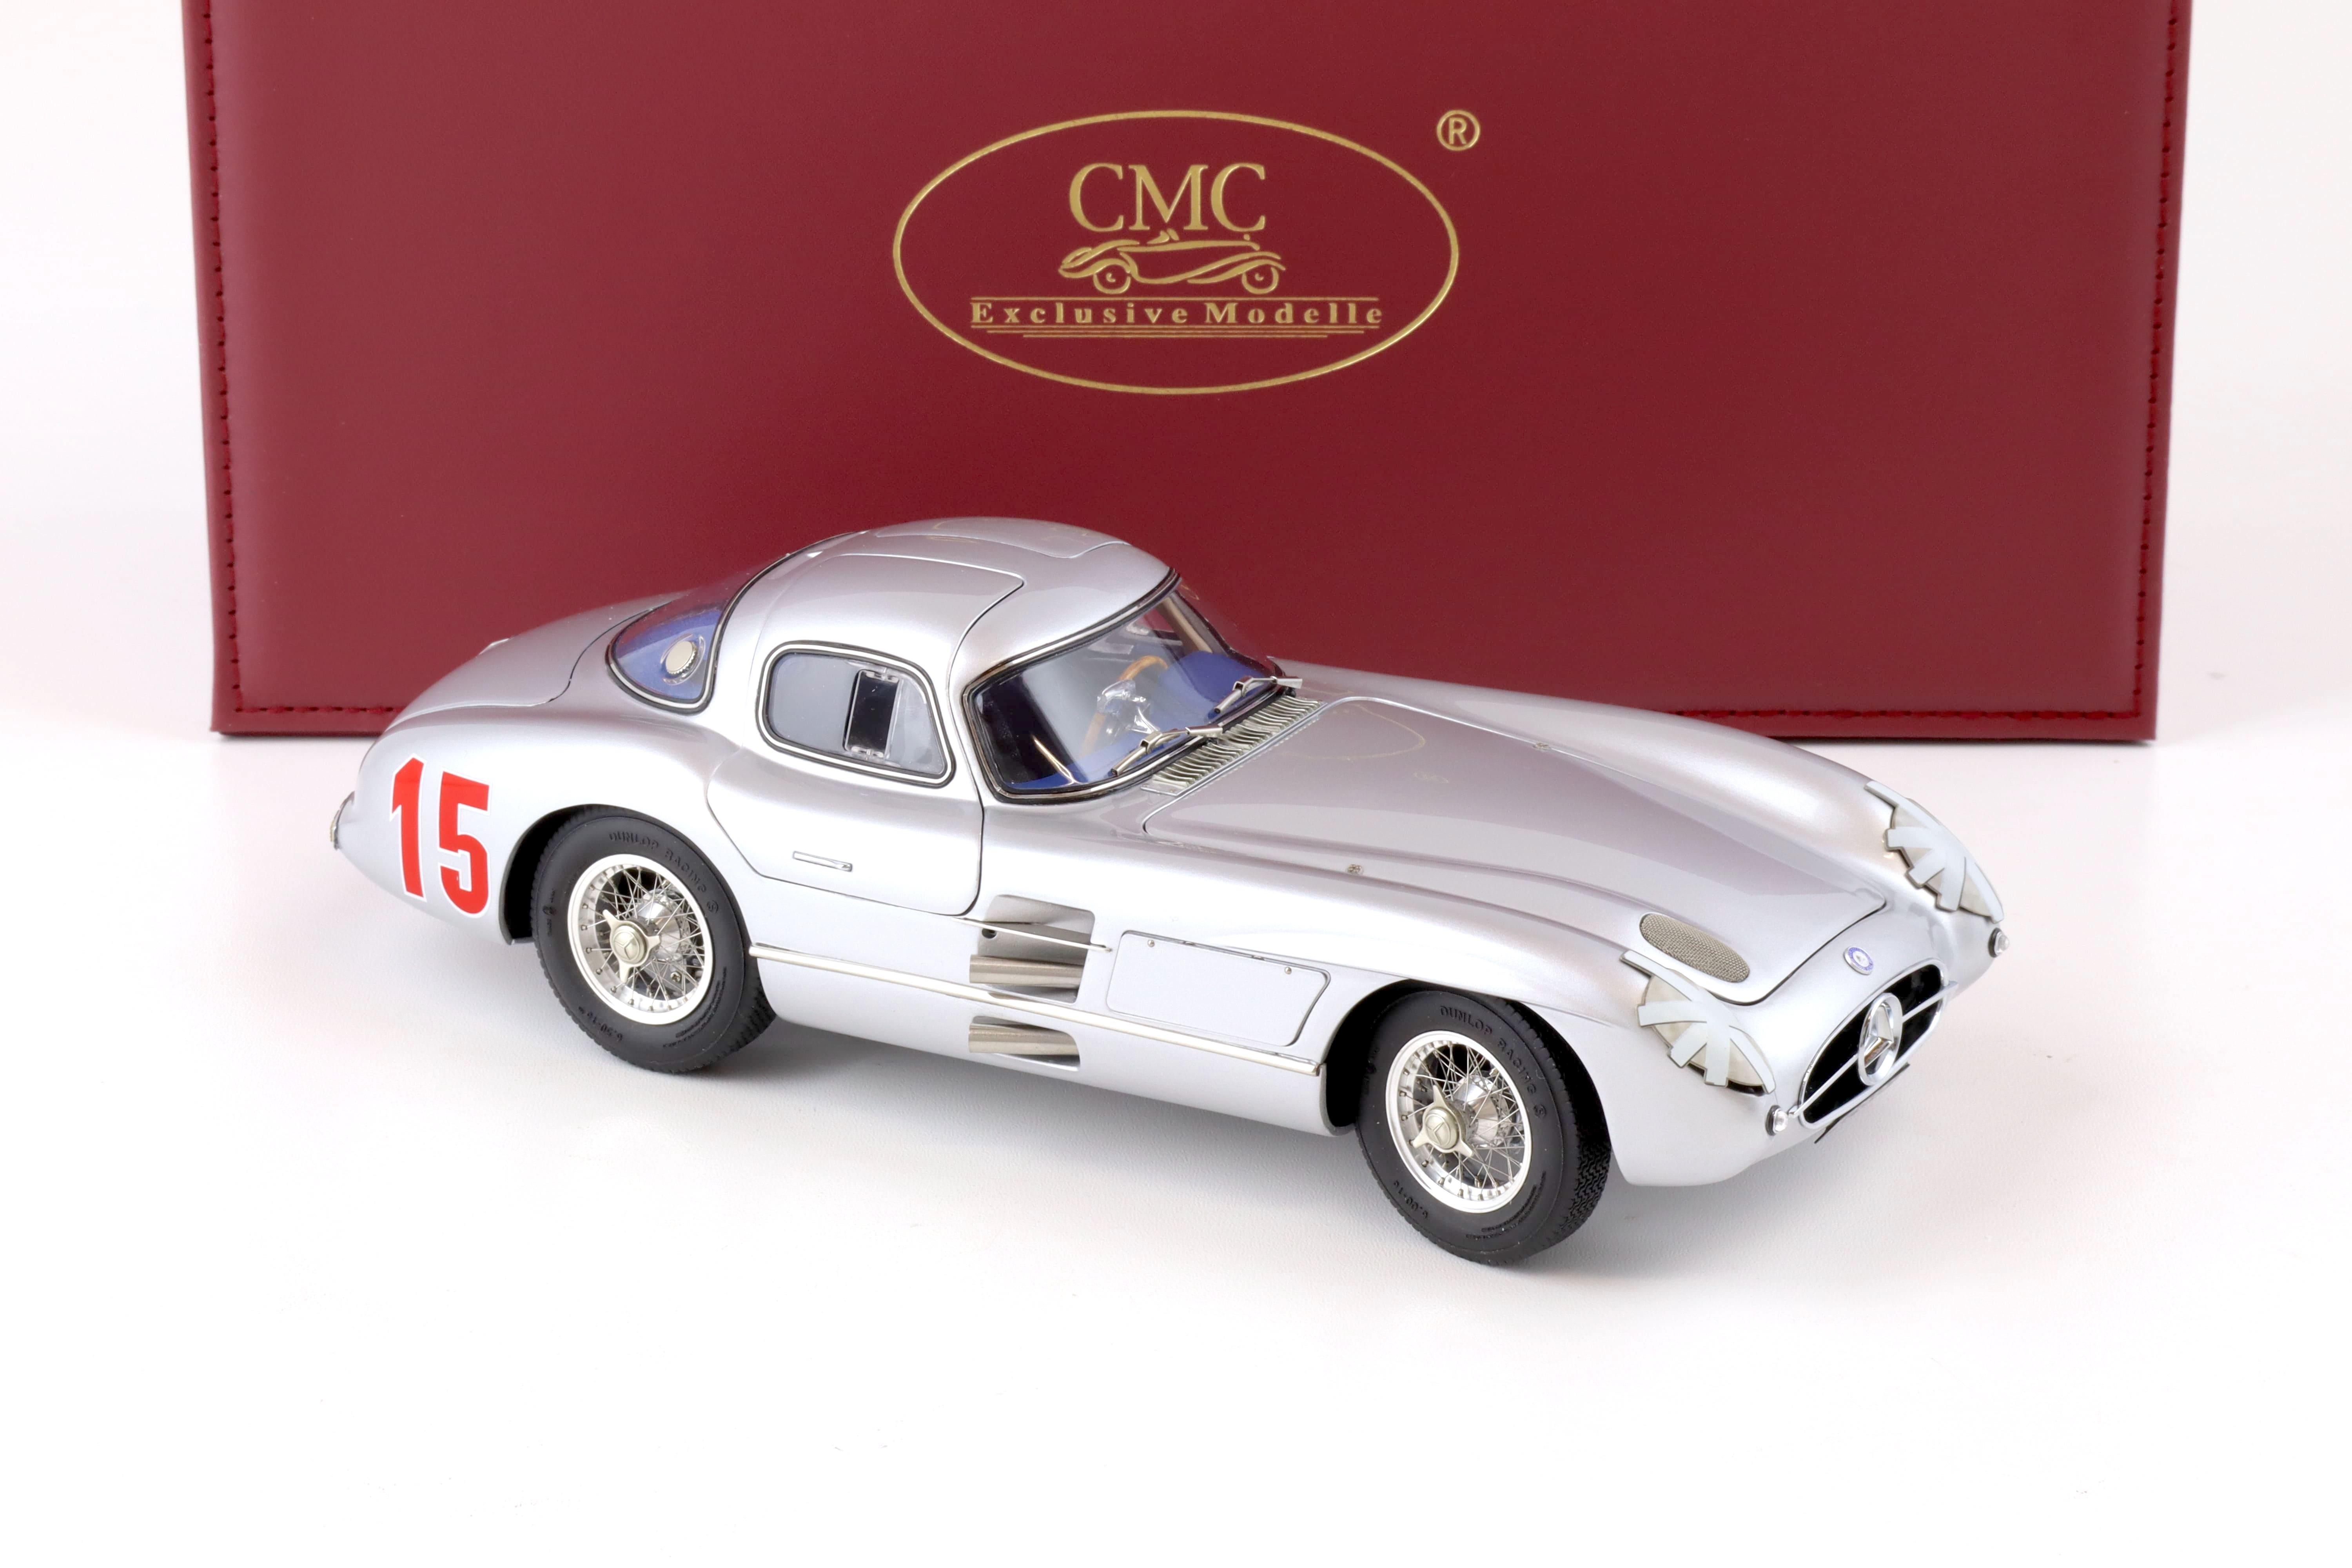 1:18 CMC Mercedes 300 SLR Uhlenhaut Coupe 1955 Großer Preis von Schweden M-244